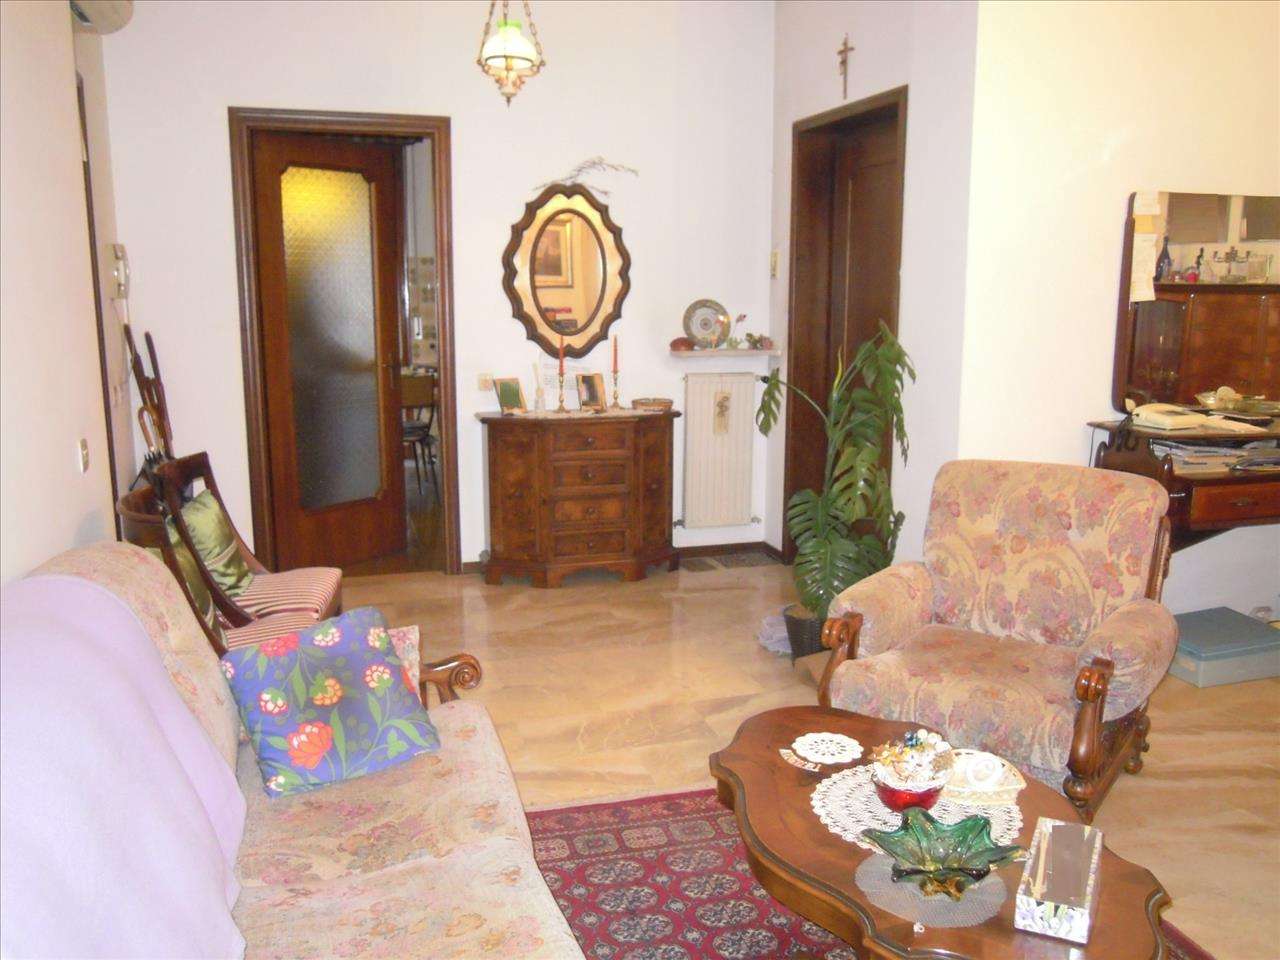 Appartamento in Vendita a Piacenza Galleana